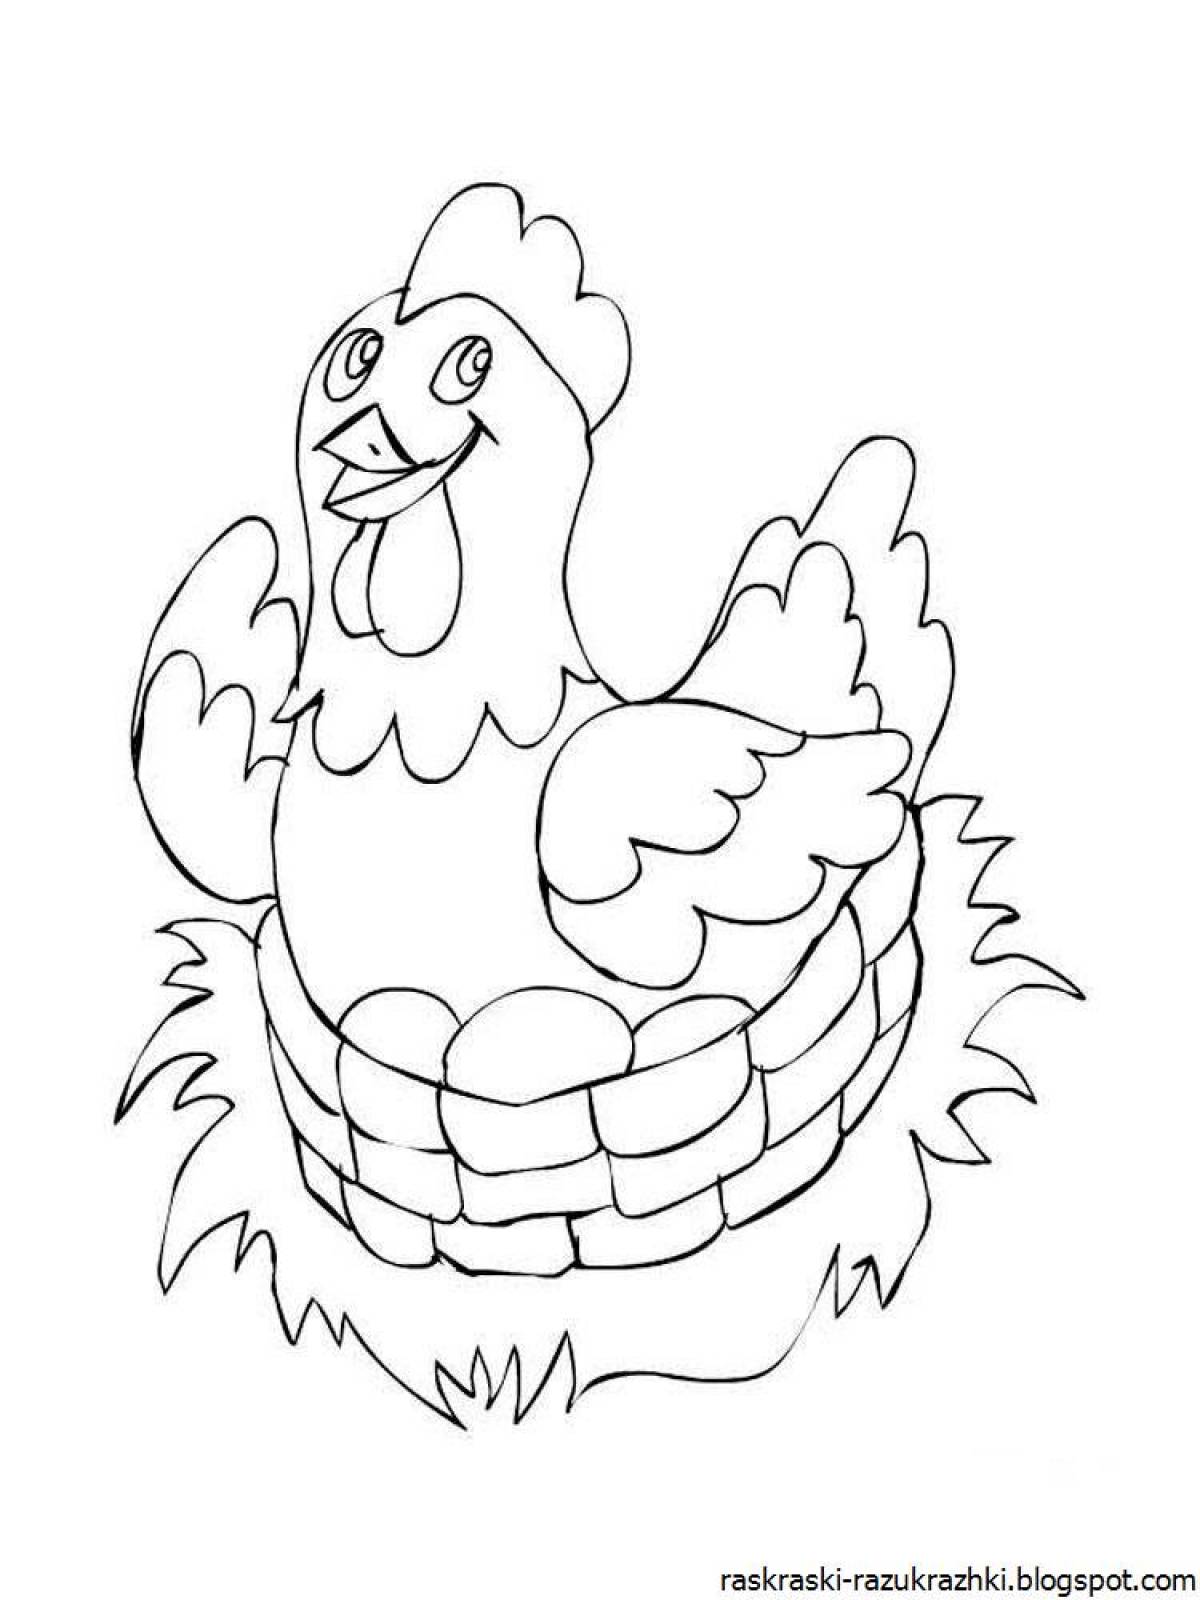 Happy chicken coloring book